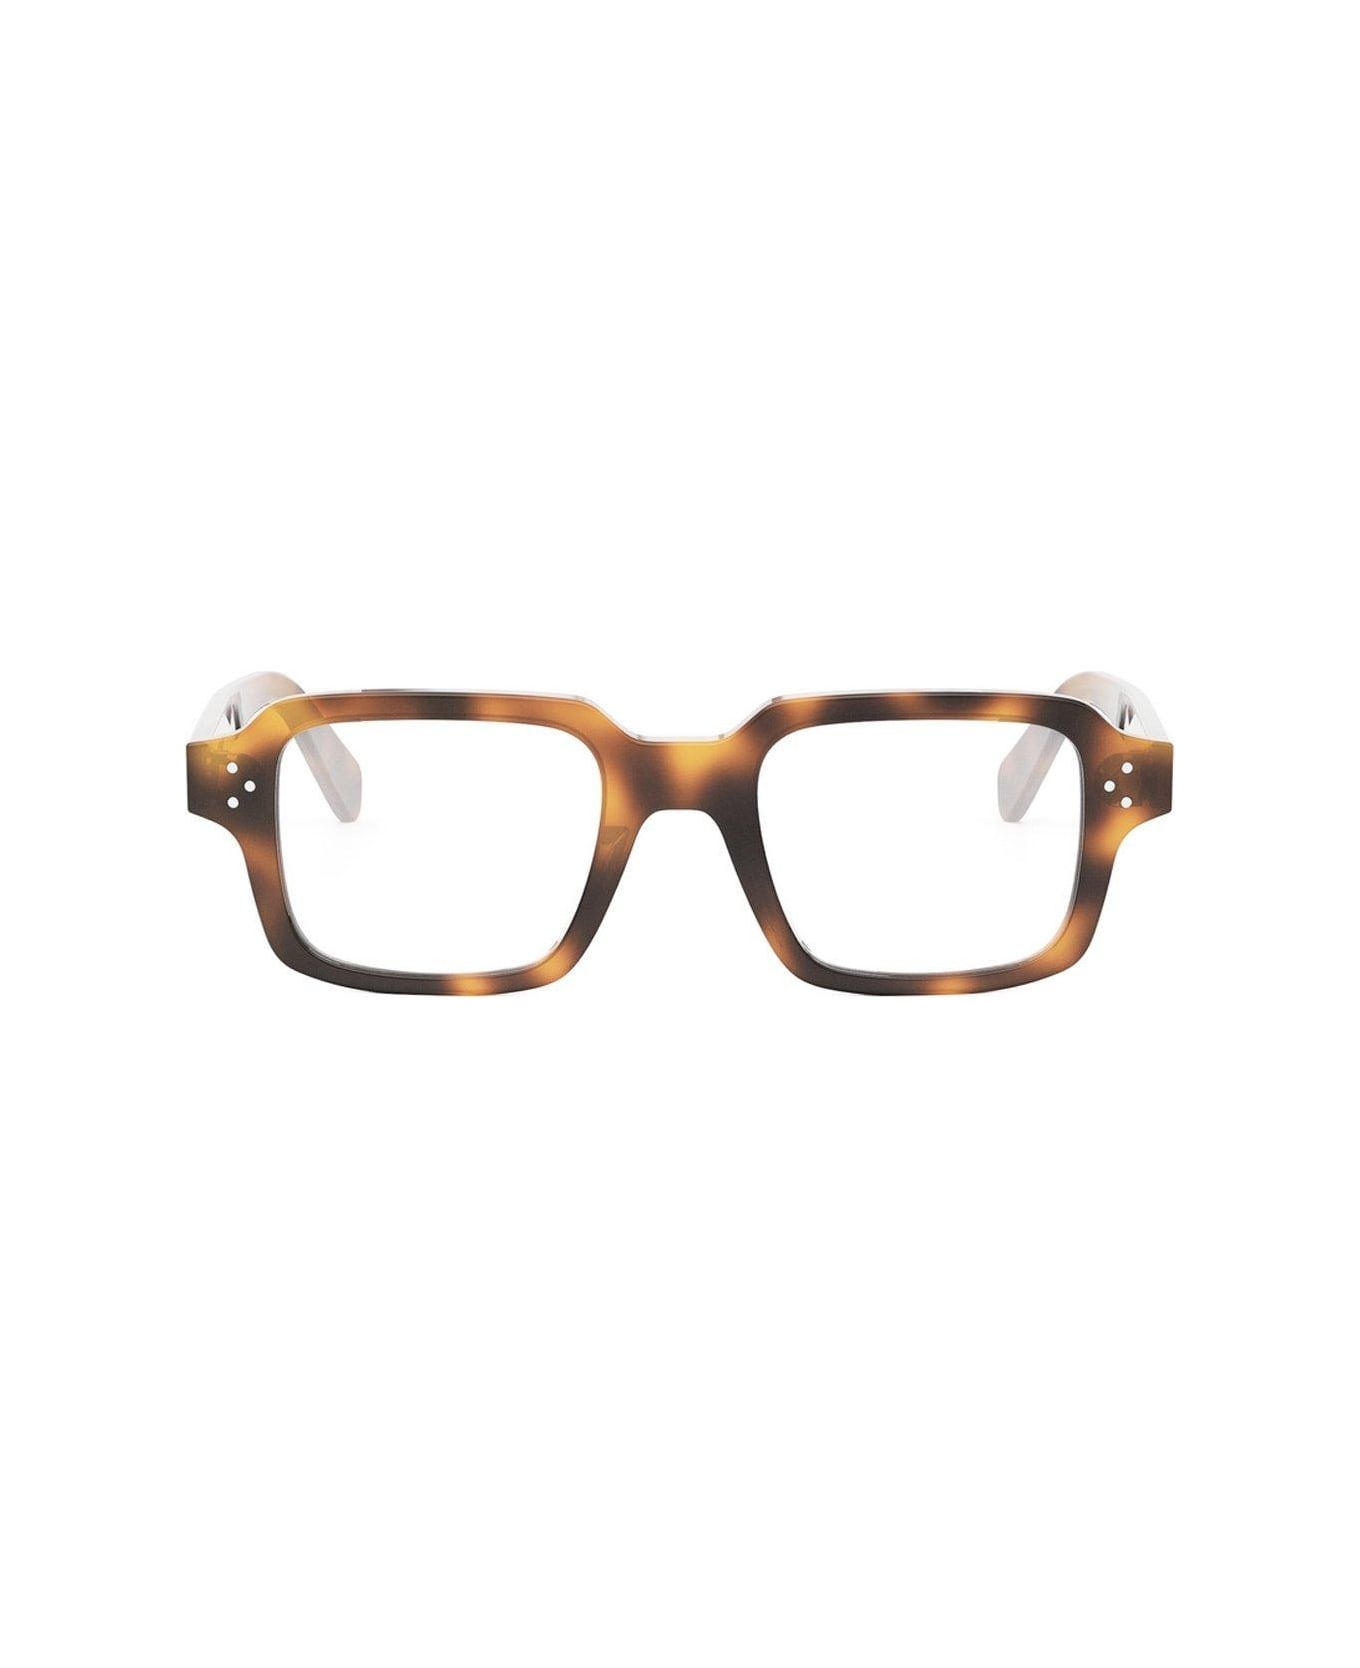 Celine Rectangular Frame Glasses - 053